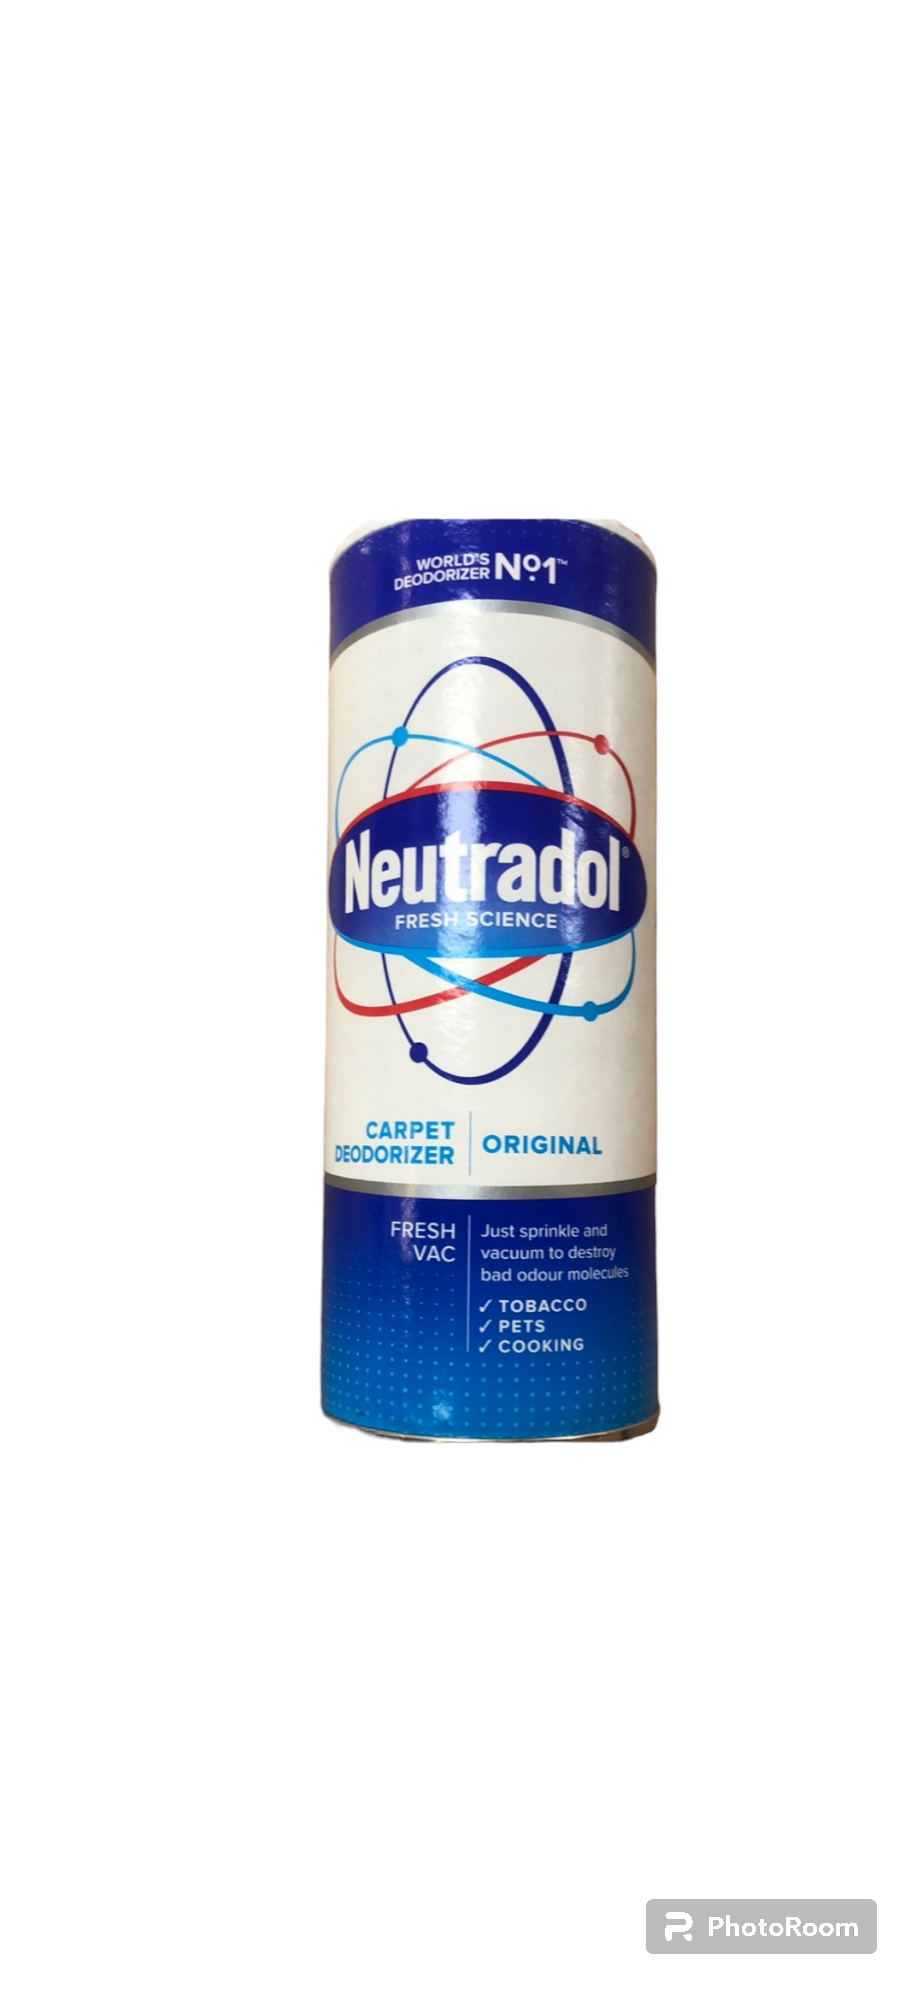 Neutradol carpet deodorizer Original 350g